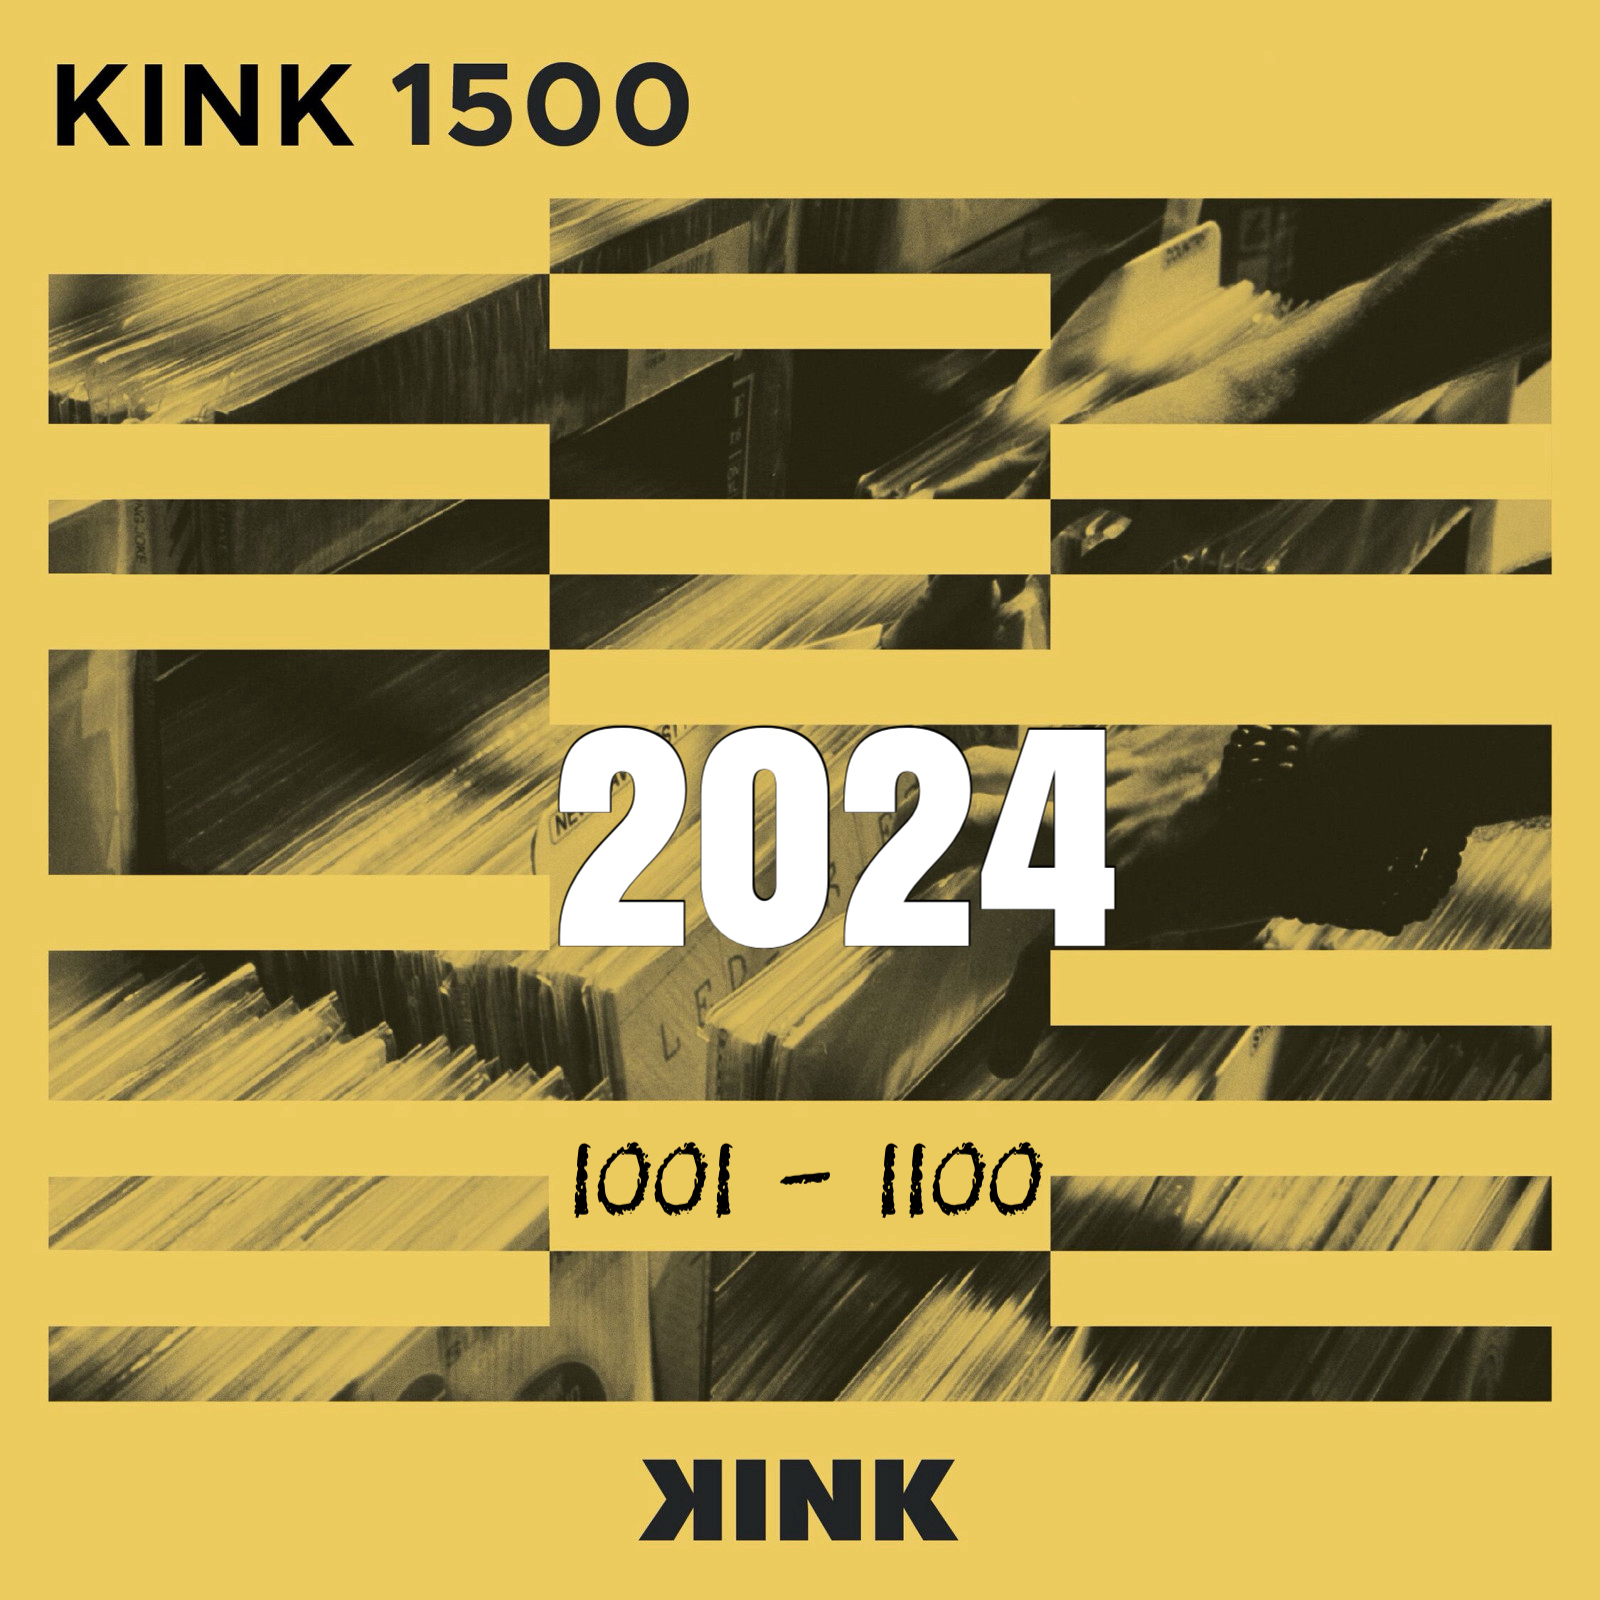 VA - Kink 1500 (2024) (1001- 1100)